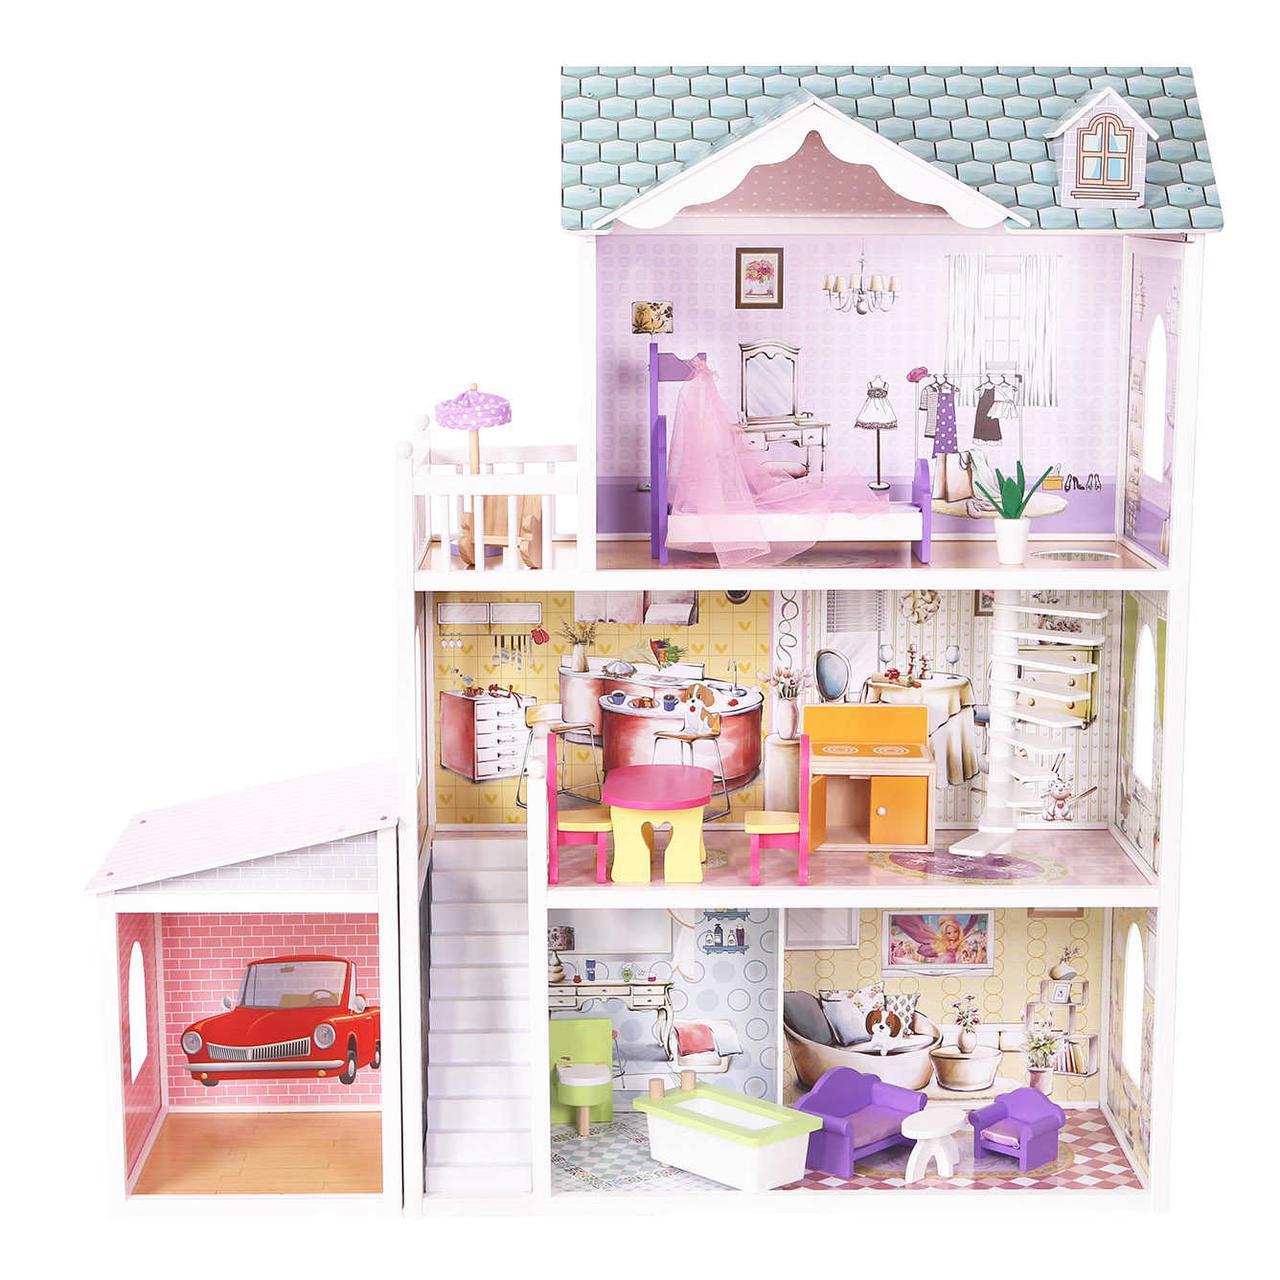 

Мега большой игровой Кукольный домик для Барби EcoToys 4108wg Beverly 124 см деревянный 3 этажа + мебель 13